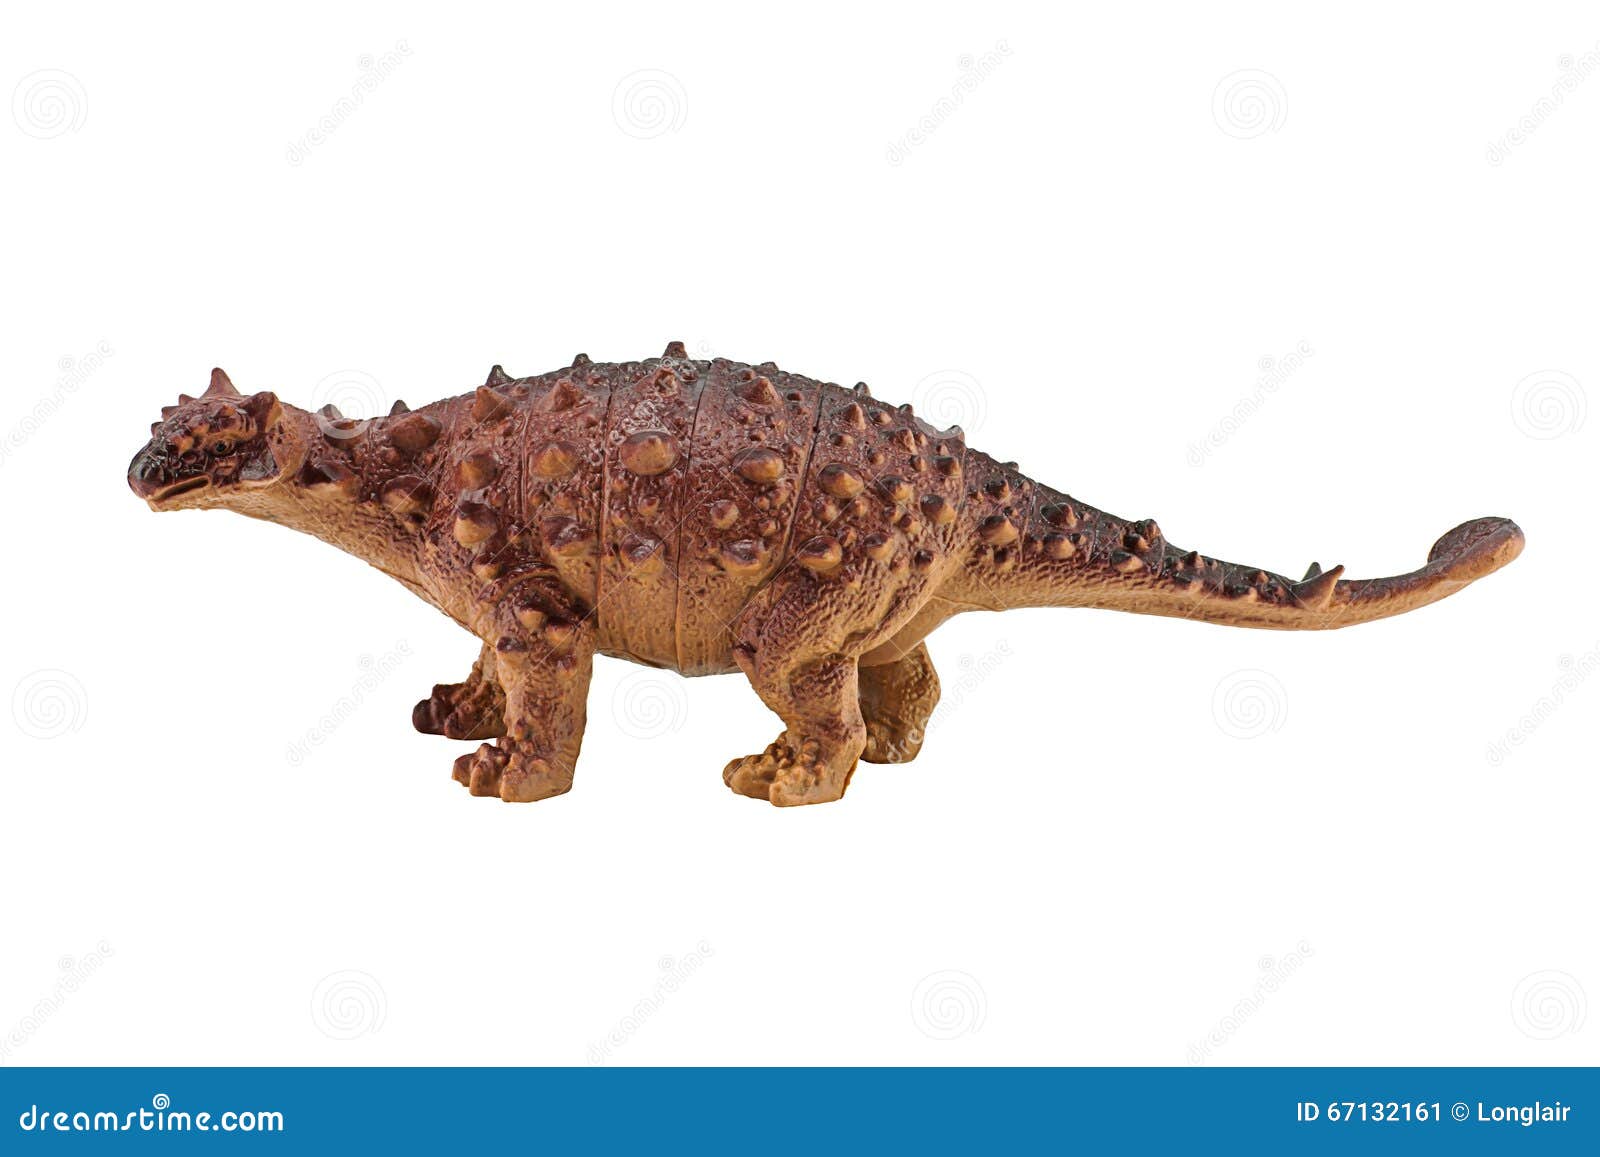 ankylosaurus dinosaurs toy figure